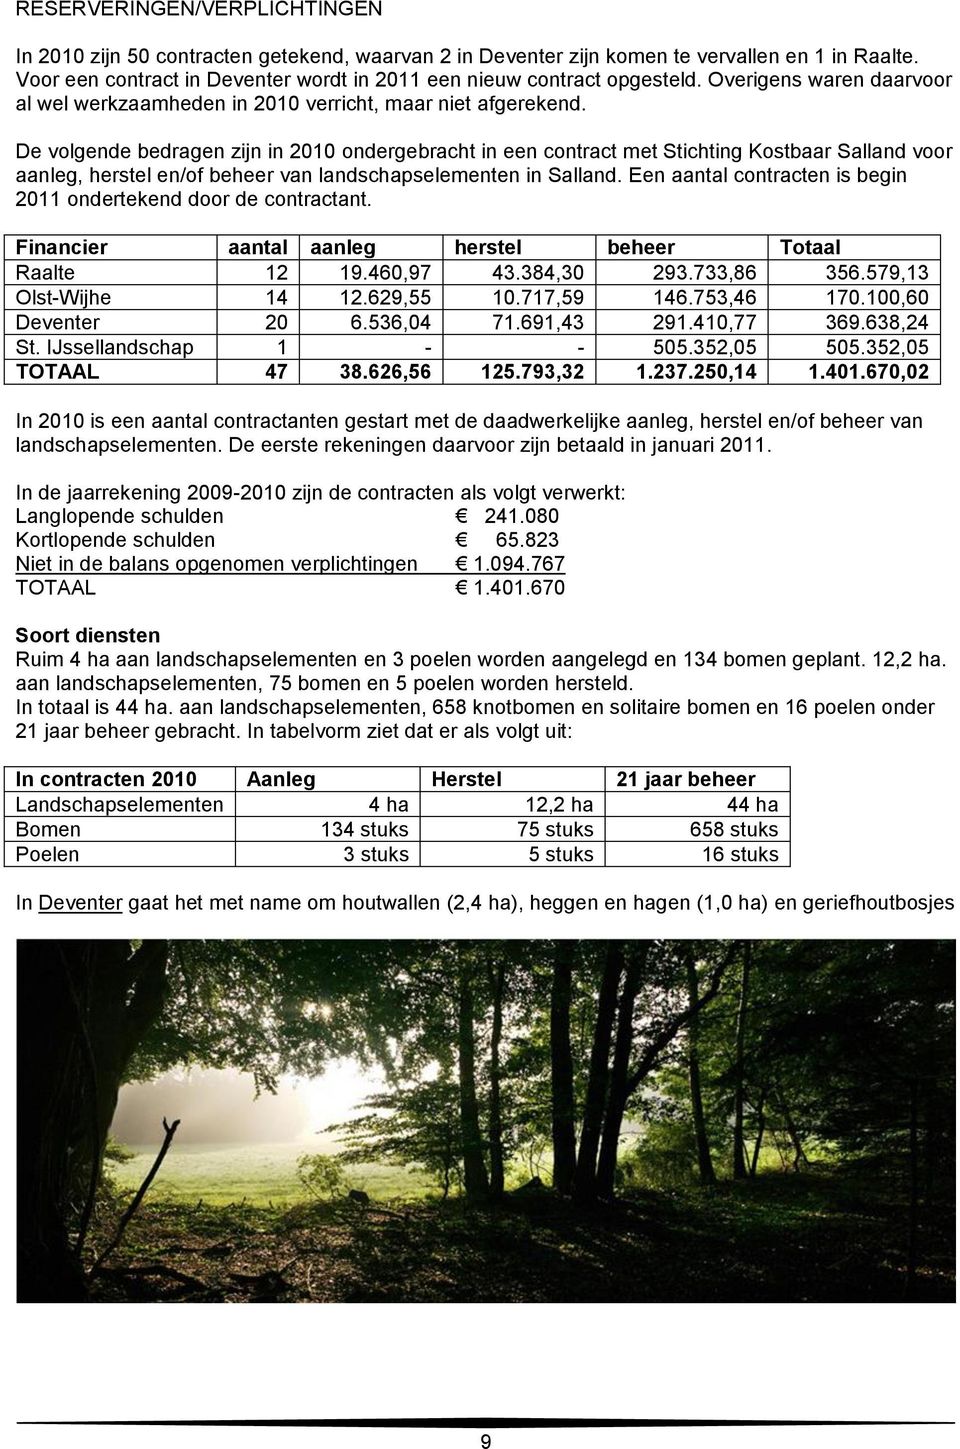 De volgende bedragen zijn in 2010 ondergebracht in een contract met Stichting Kostbaar Salland voor aanleg, herstel en/of beheer van landschapselementen in Salland.